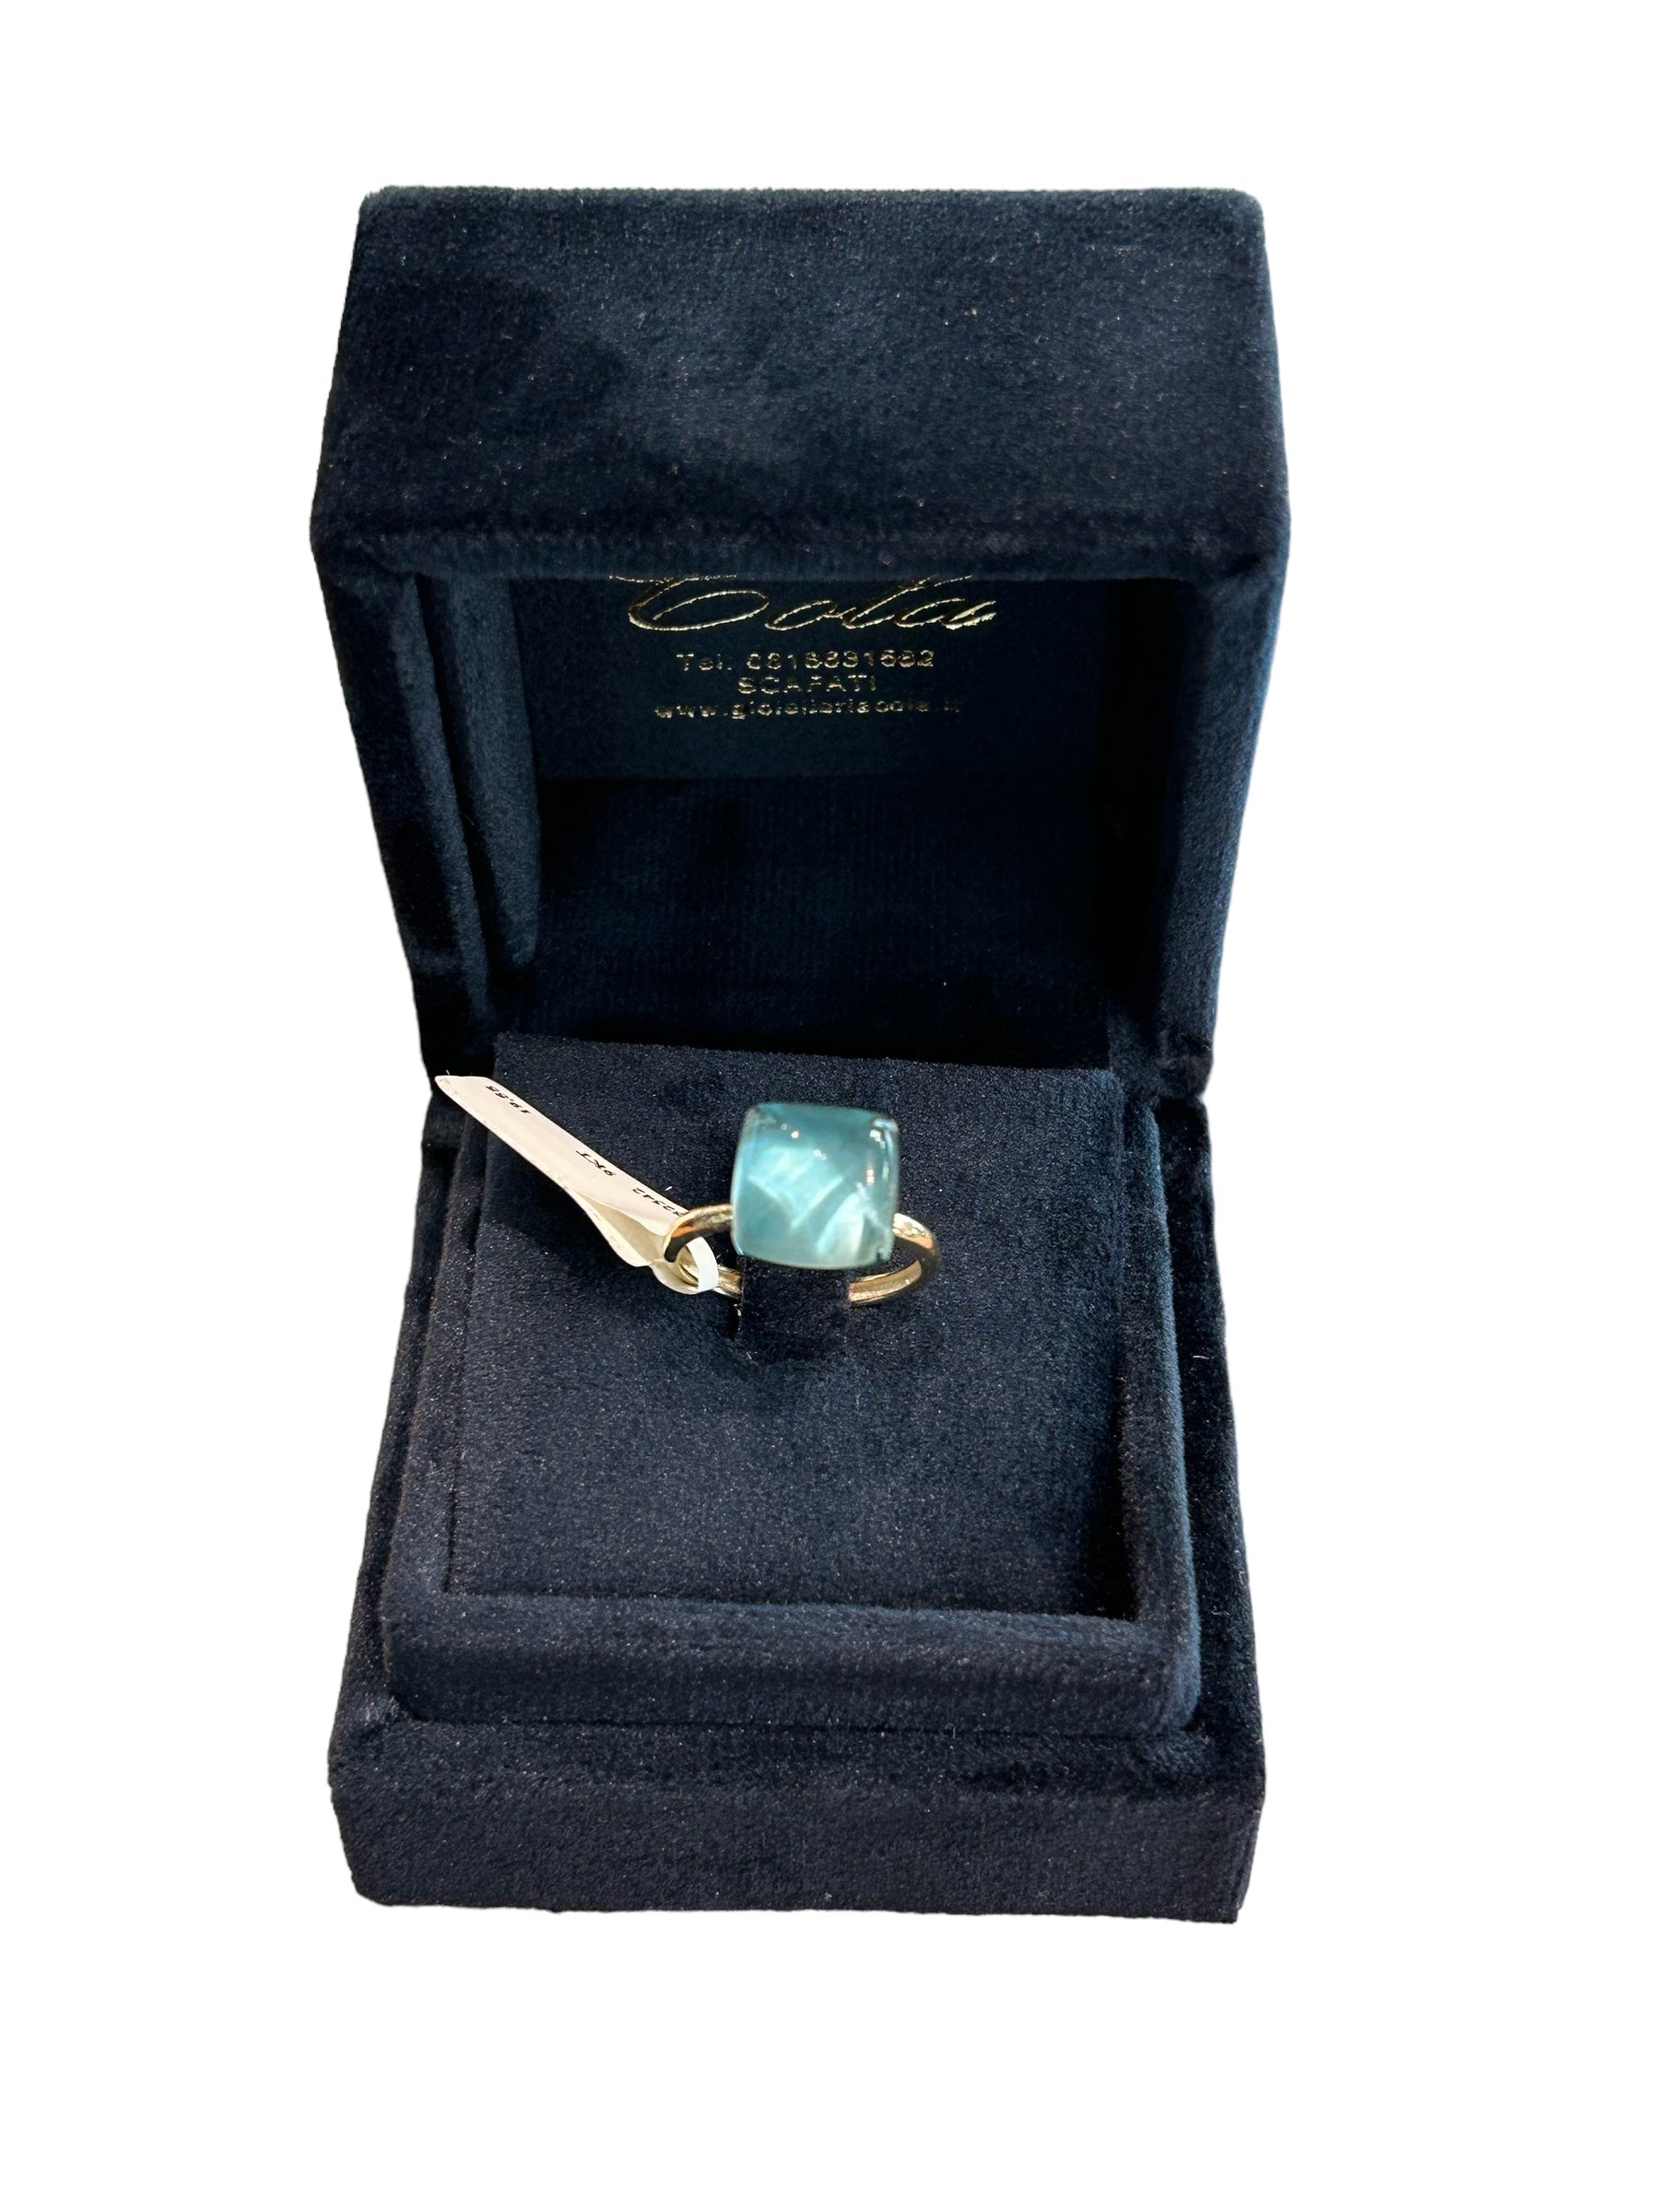 Mazza - Bague en or 9 carats et pierre type topaze bleu clair - AN CUBIC